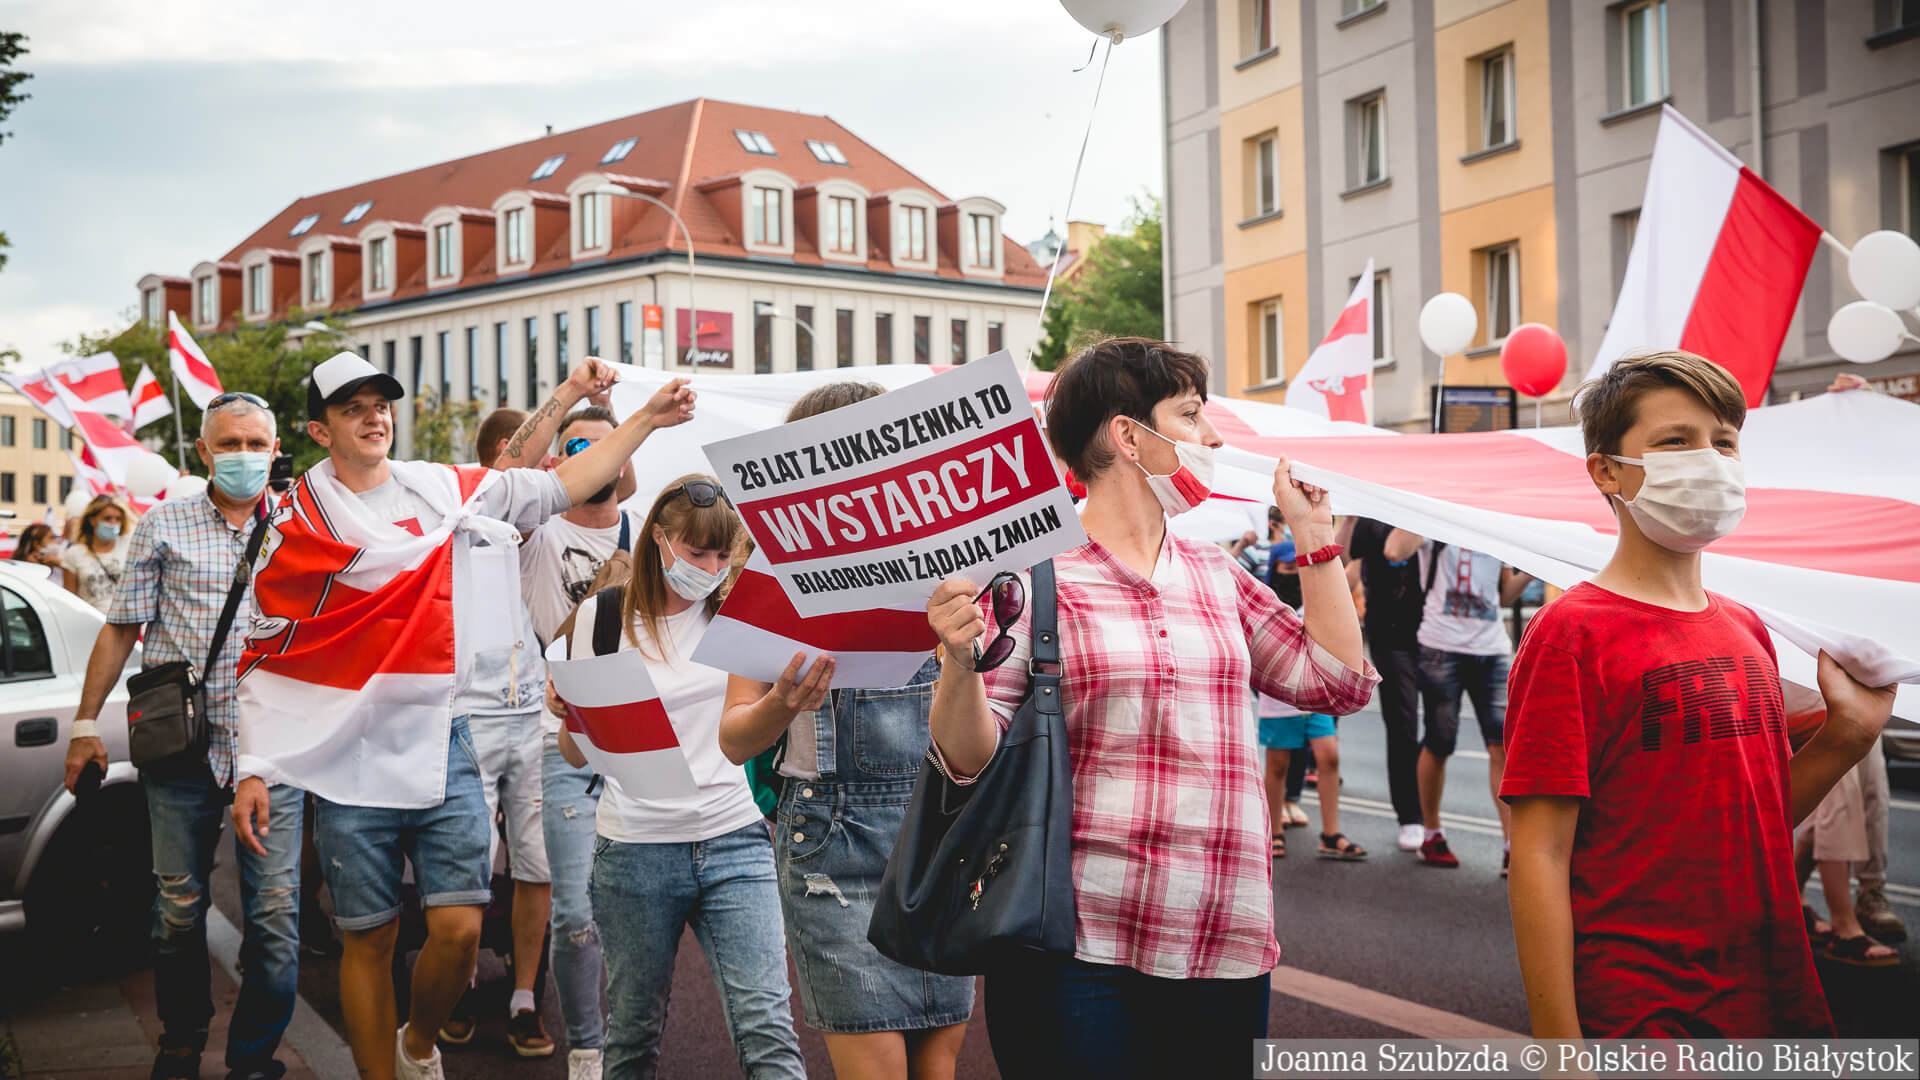 Marsz Solidarności z Białorusią w Białymstoku, fot. Joanna Szubzda